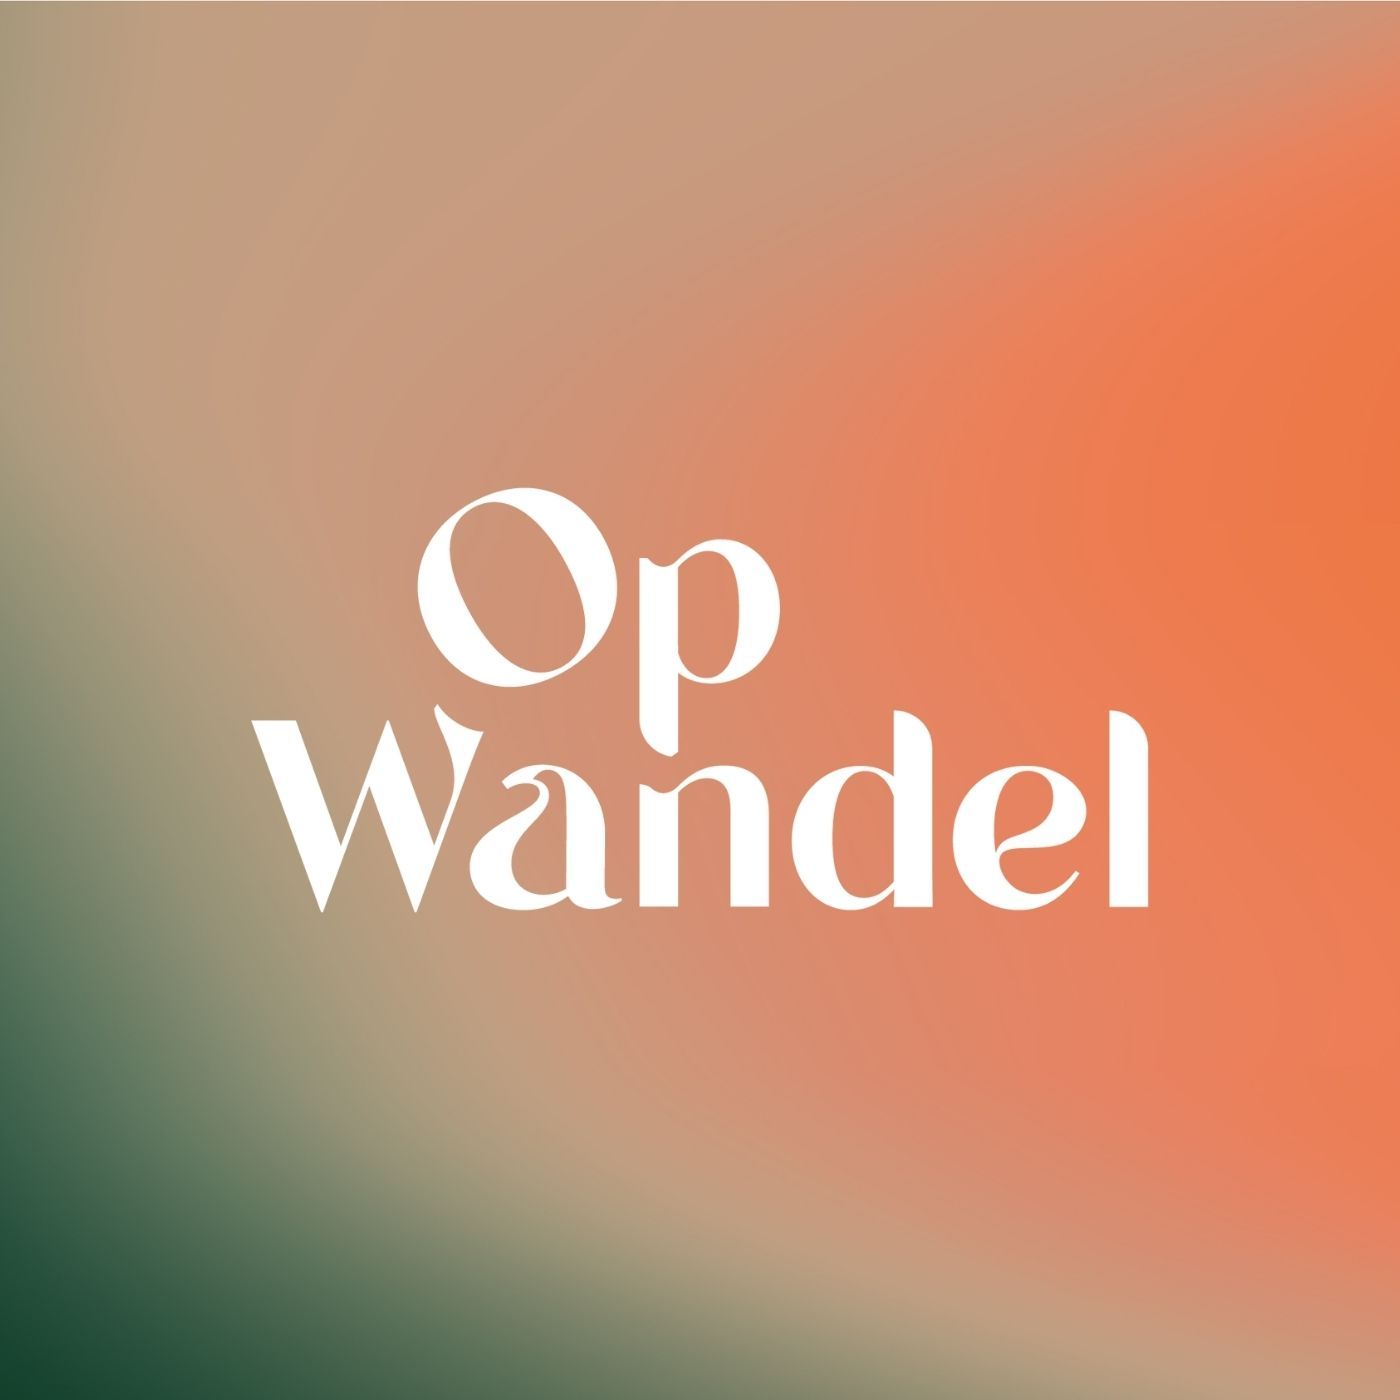 Op Wandel logo